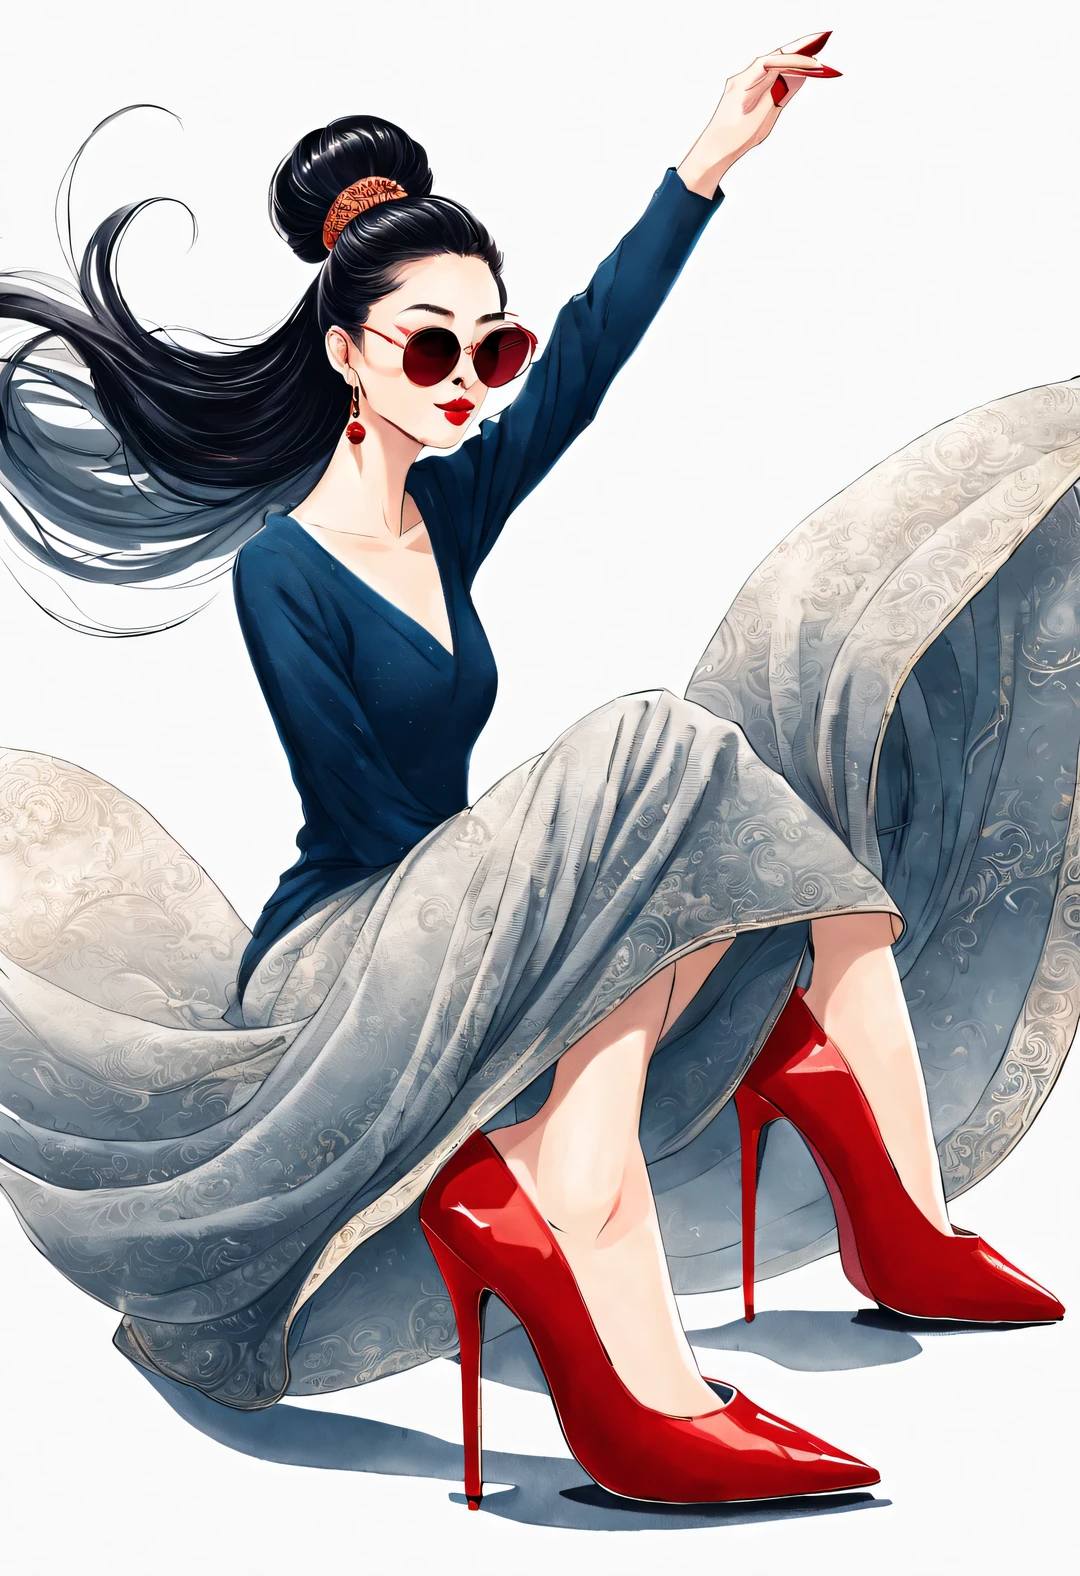 (役割概念), (ハーフサイズのクローズアップ), (裸足で赤いハイヒールを振る美しい中国の女の子: 1.3), (大きなサングラスをかけ、トップをおだんごヘアにしている: 1.2), クラシックとモダンの調和のとれた組み合わせ, 濃紺と茶色のセーター, ジーンズ, スカーフ, おしゃれな服にジャケットを合わせる, 優雅, 色白で完璧な滑らかな肌を持つ女の子, 高い鼻梁, 頭を上げた姿勢, 悲しいけれど美しい, 細身の体型, 絶妙な顔立ち,
渦巻く霧のイラスト, 水墨画, 黒髪, ボールヘッド, 誇りに思う, シュルレアリスム, 現代アート写真, アクションペインティングイラスト, 抽象表現主義, ピクサー, 被写界深度, モーションブラー, バックライト, 放射線, 衰退, ヘッドアップ角度, ソニーFEゼネラルマネージャー, 超高解像度, 傑作, 正確な, キメのある肌, スーパー詳細, 細部までこだわった, 高品質, 受賞歴のある, 最高品質, レベル, 16k, 下から見上げた視点で撮影,